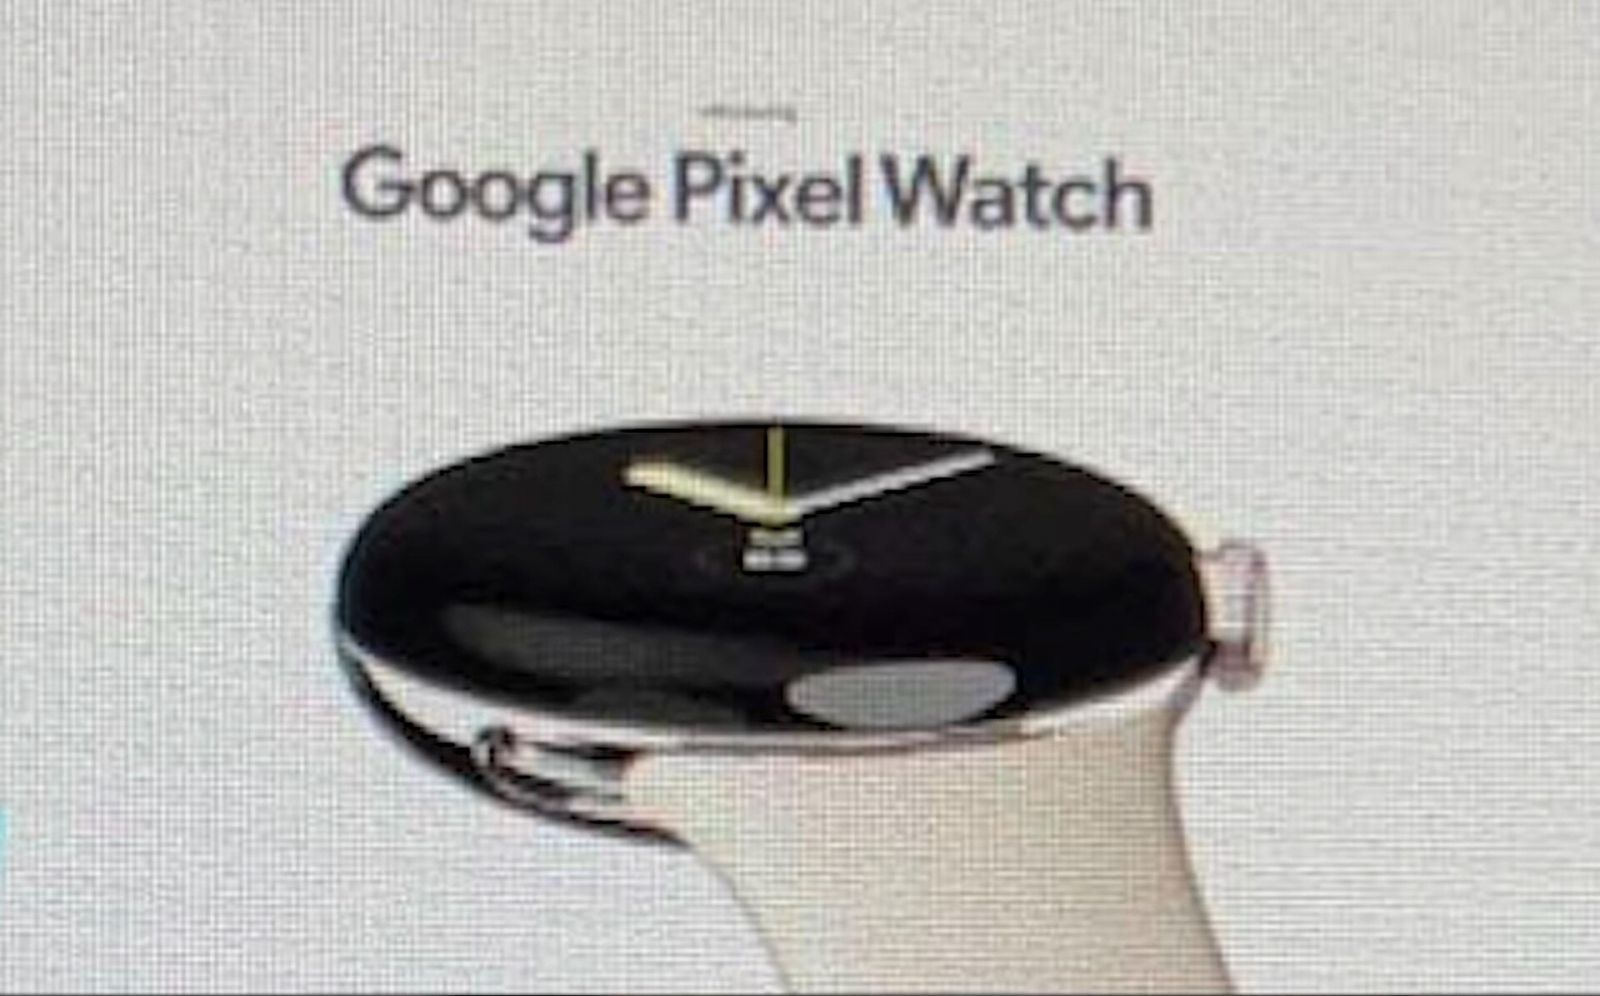 csm_Google_Pixel_Watch_offizielle_Markteing_Bilder_7_4762258005.jpeg